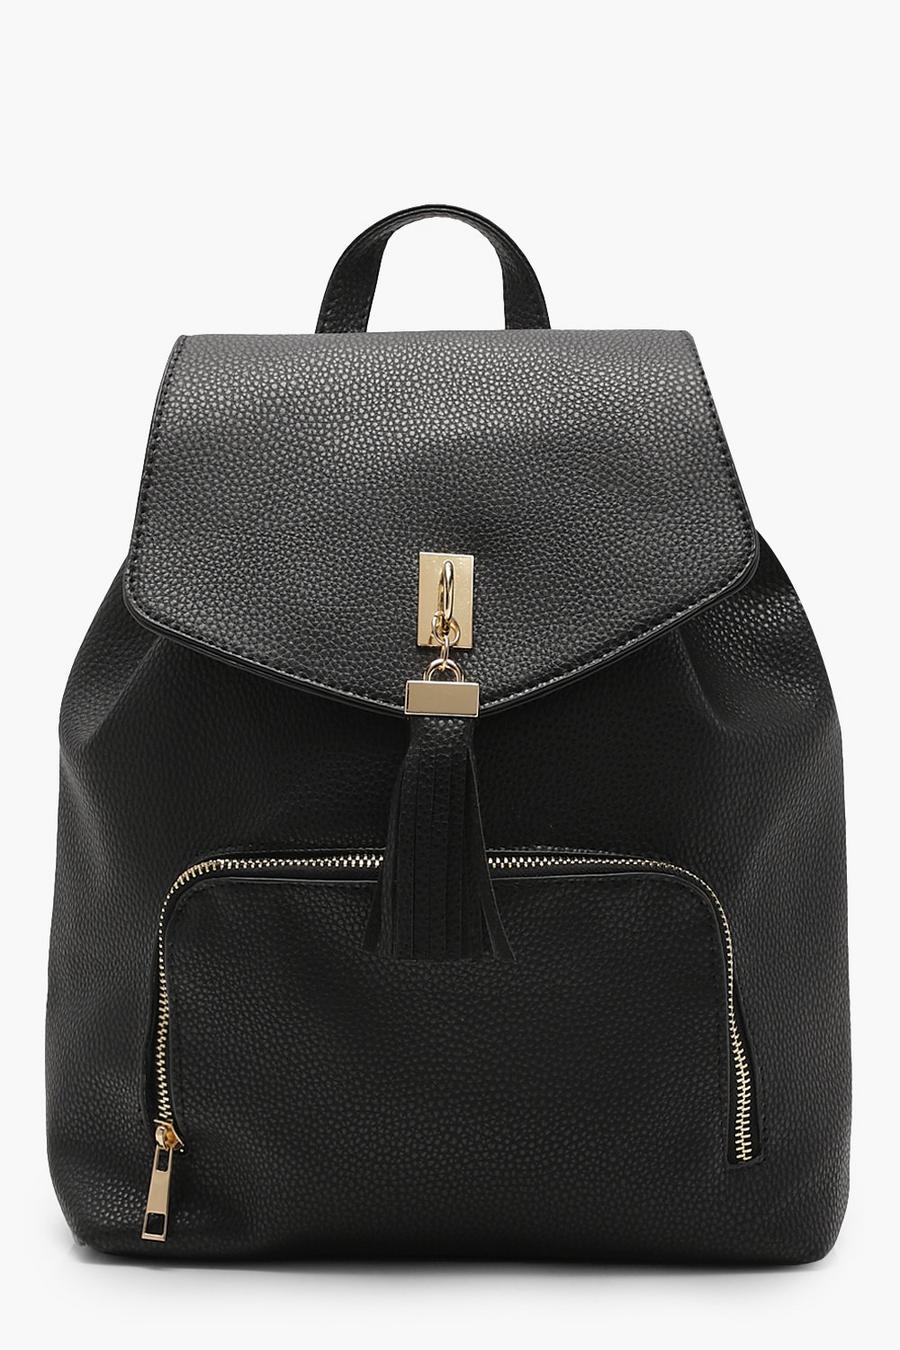 Black Fringe Tassel Rucksack Bag